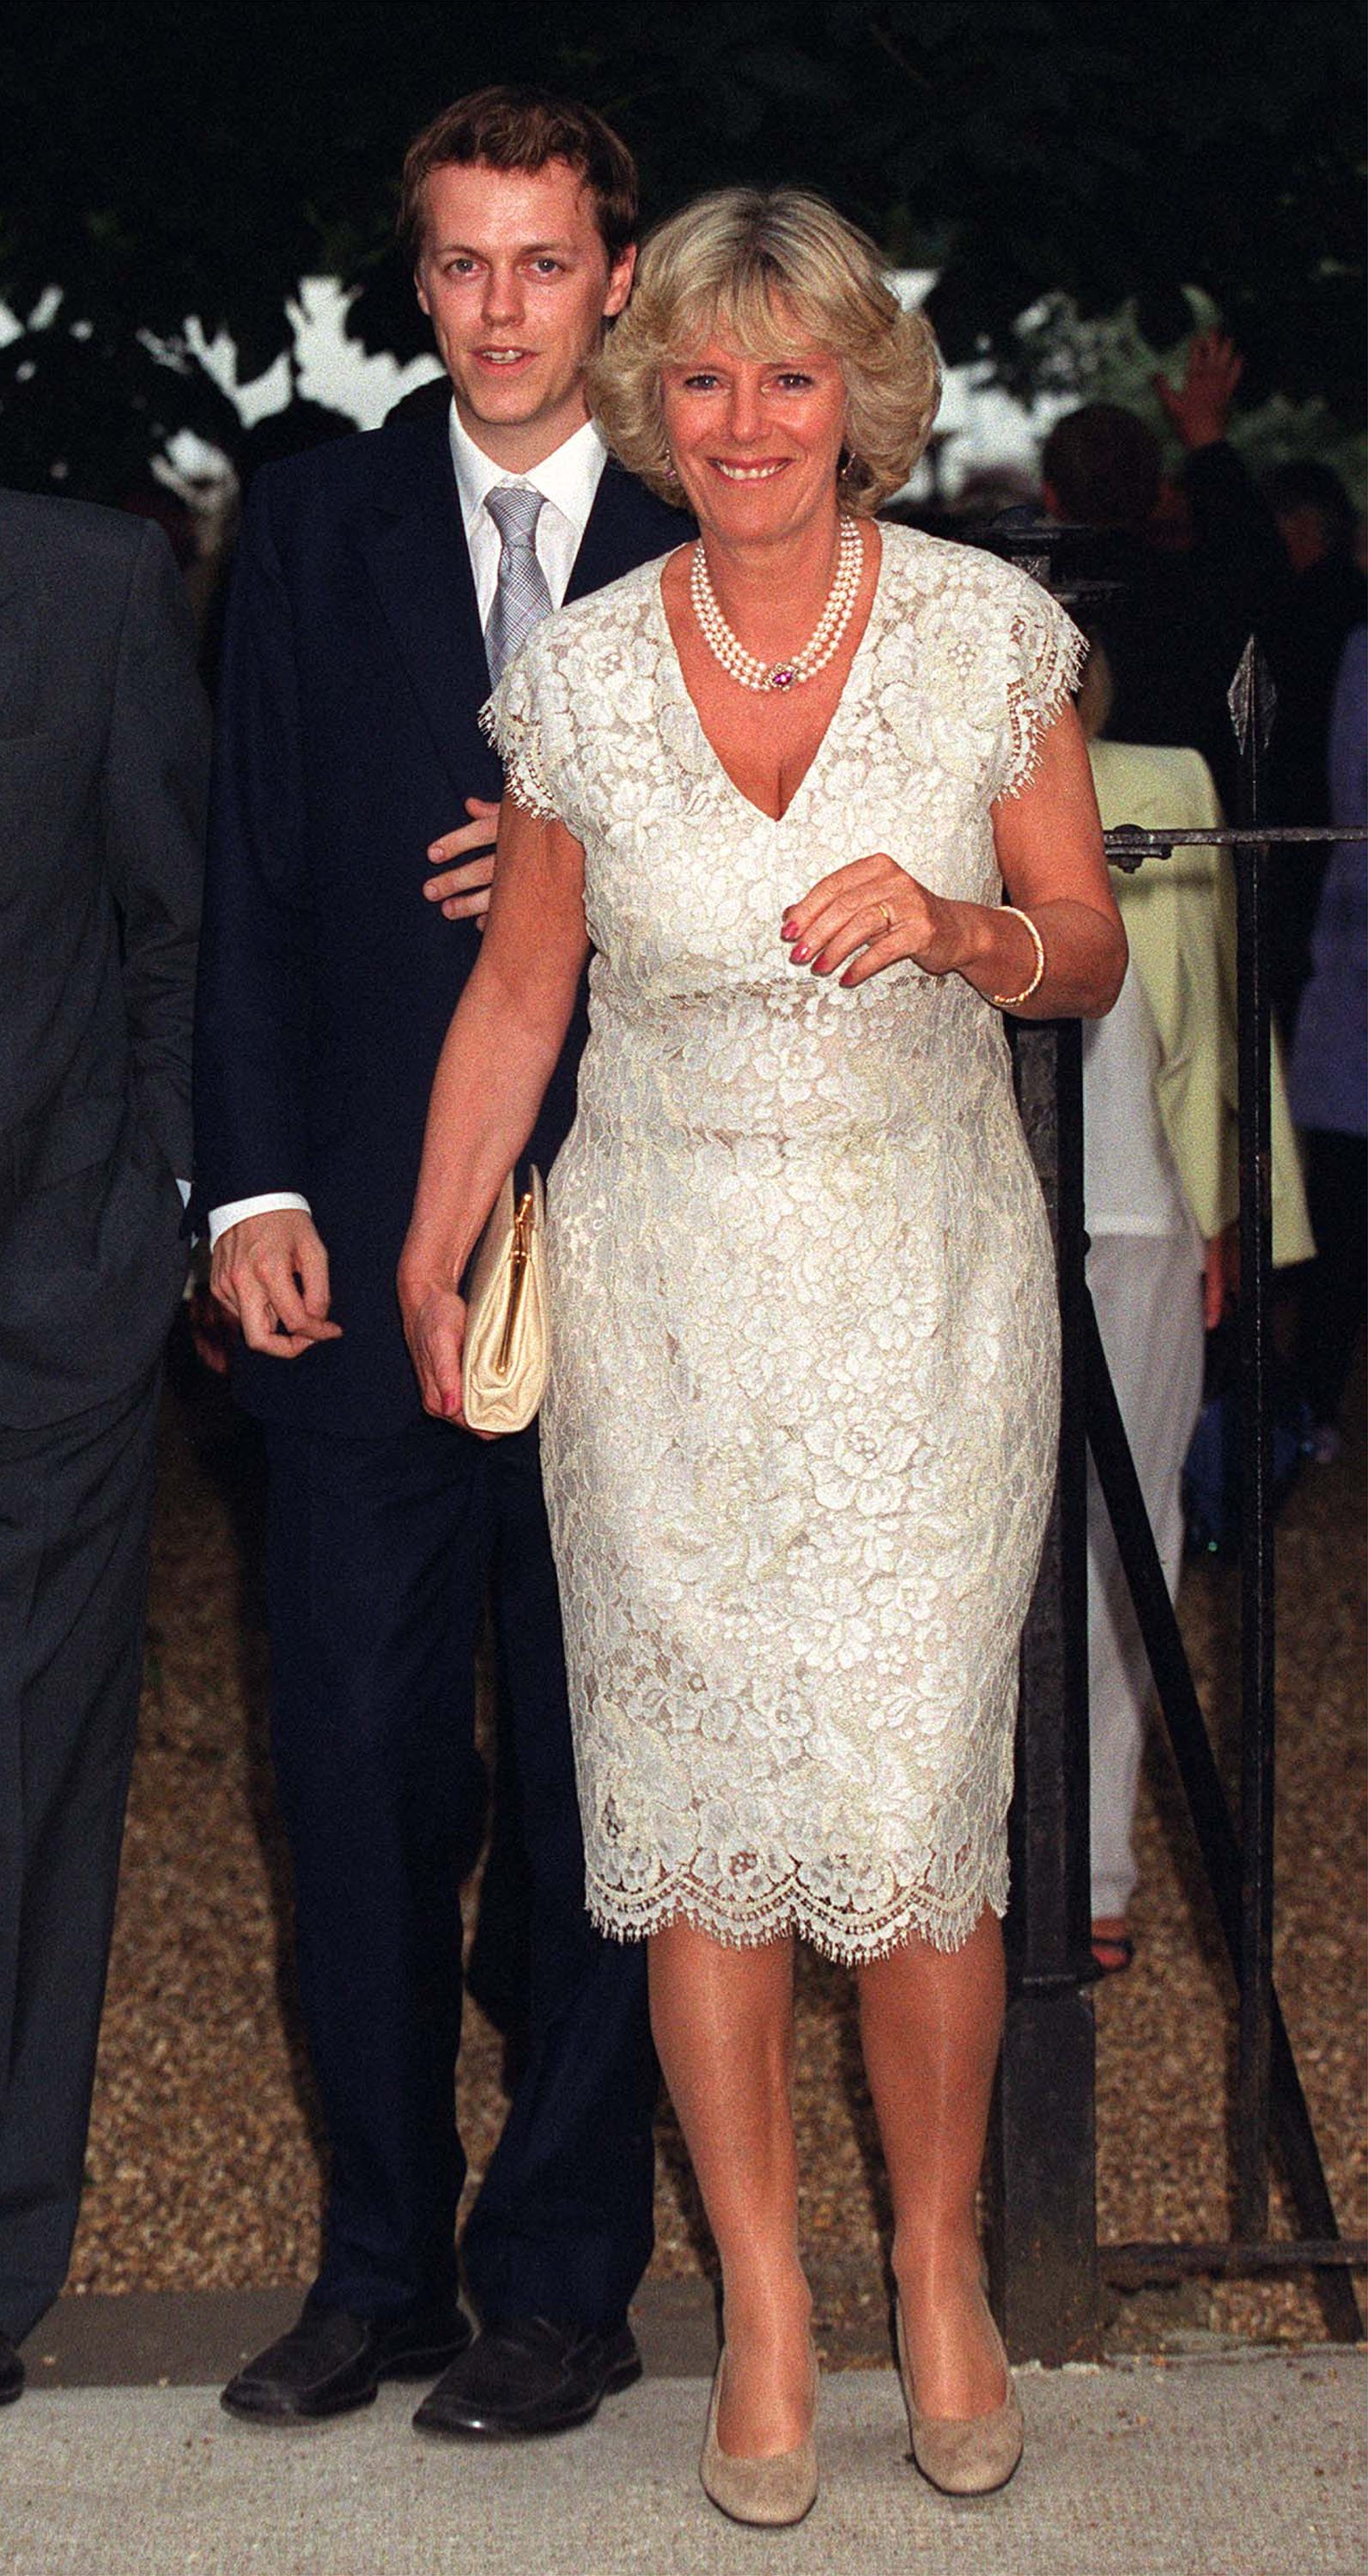 Camilla y Tom Parker-Bowles en una fiesta de verano organizada por Sir David Frost, el 4 de julio de 2001 en su casa de Chelsea, Londres. | Foto: Getty Images